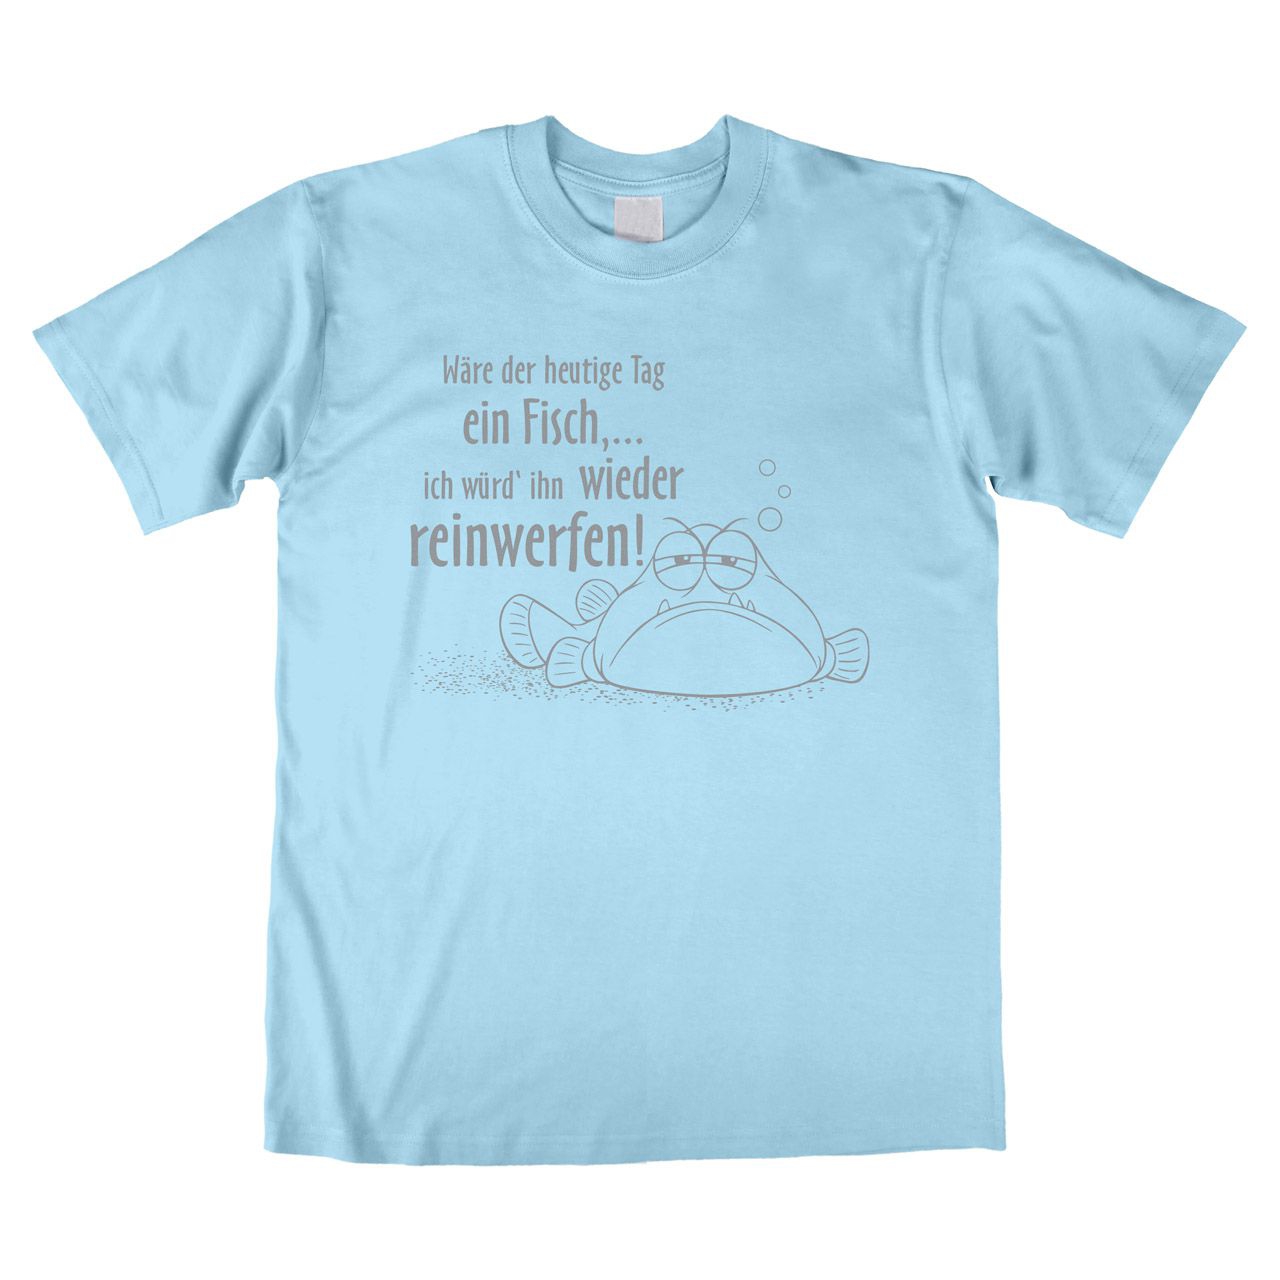 Wäre der heutige Tag ein Fisch Unisex T-Shirt hellblau Medium